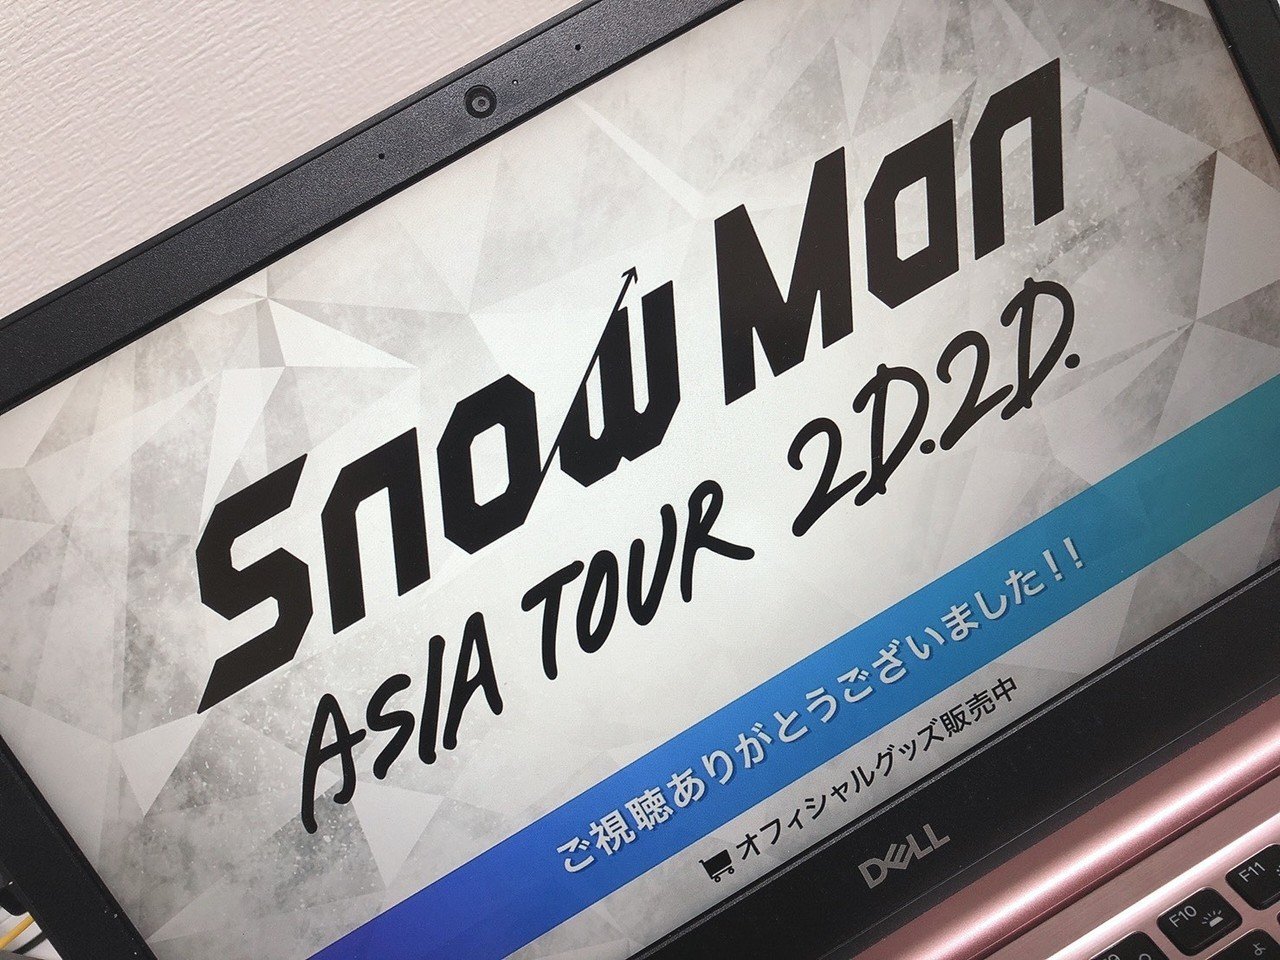 Snowman アジア ツアー